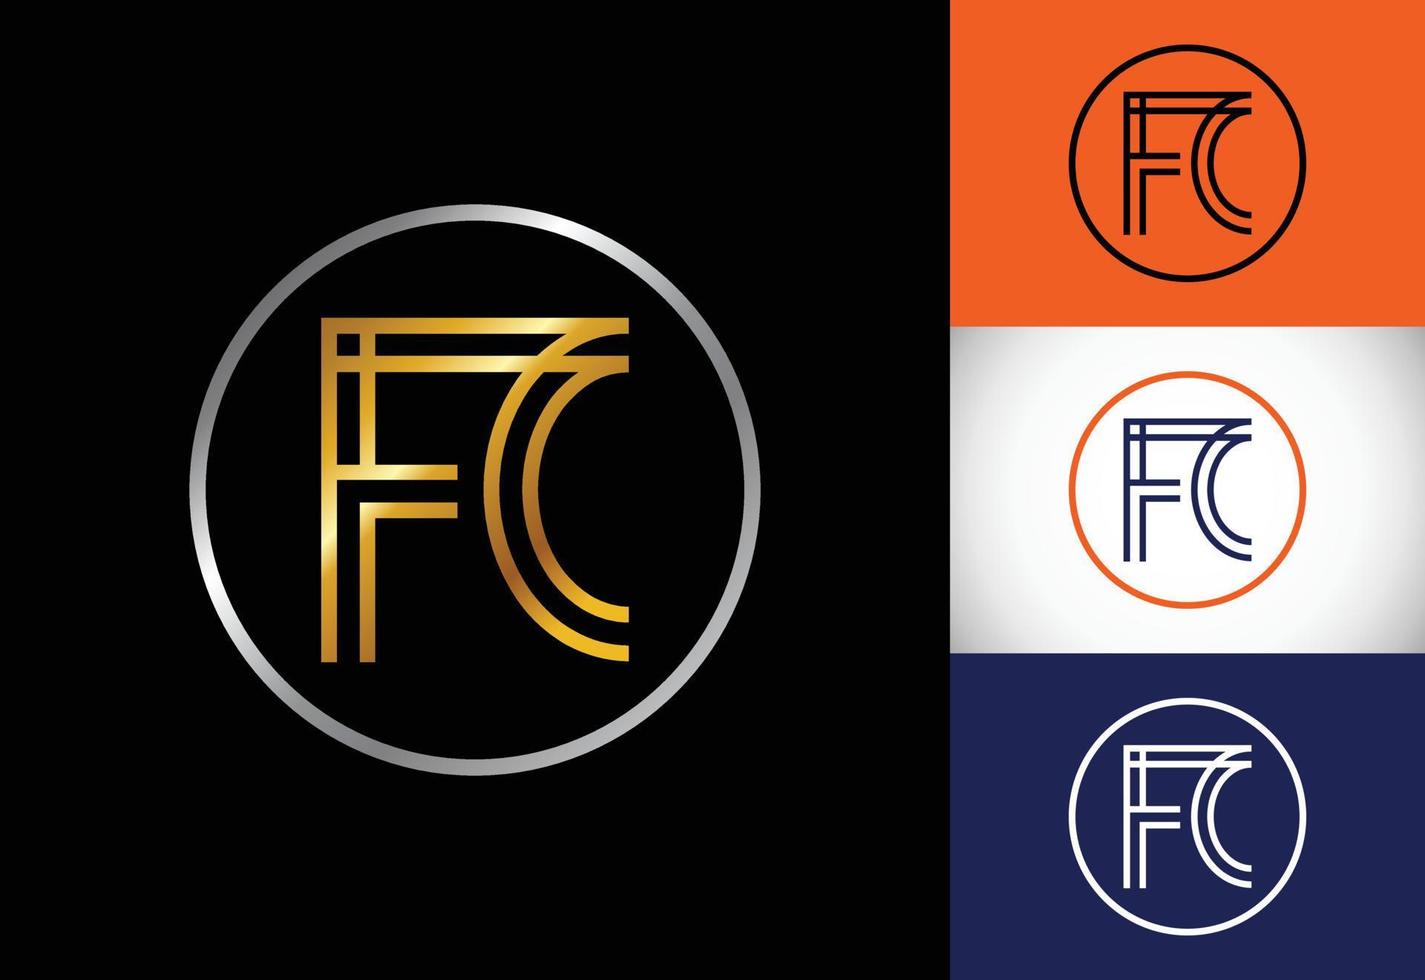 vetor de design de logotipo fc letra inicial. símbolo gráfico do alfabeto para identidade de negócios corporativos